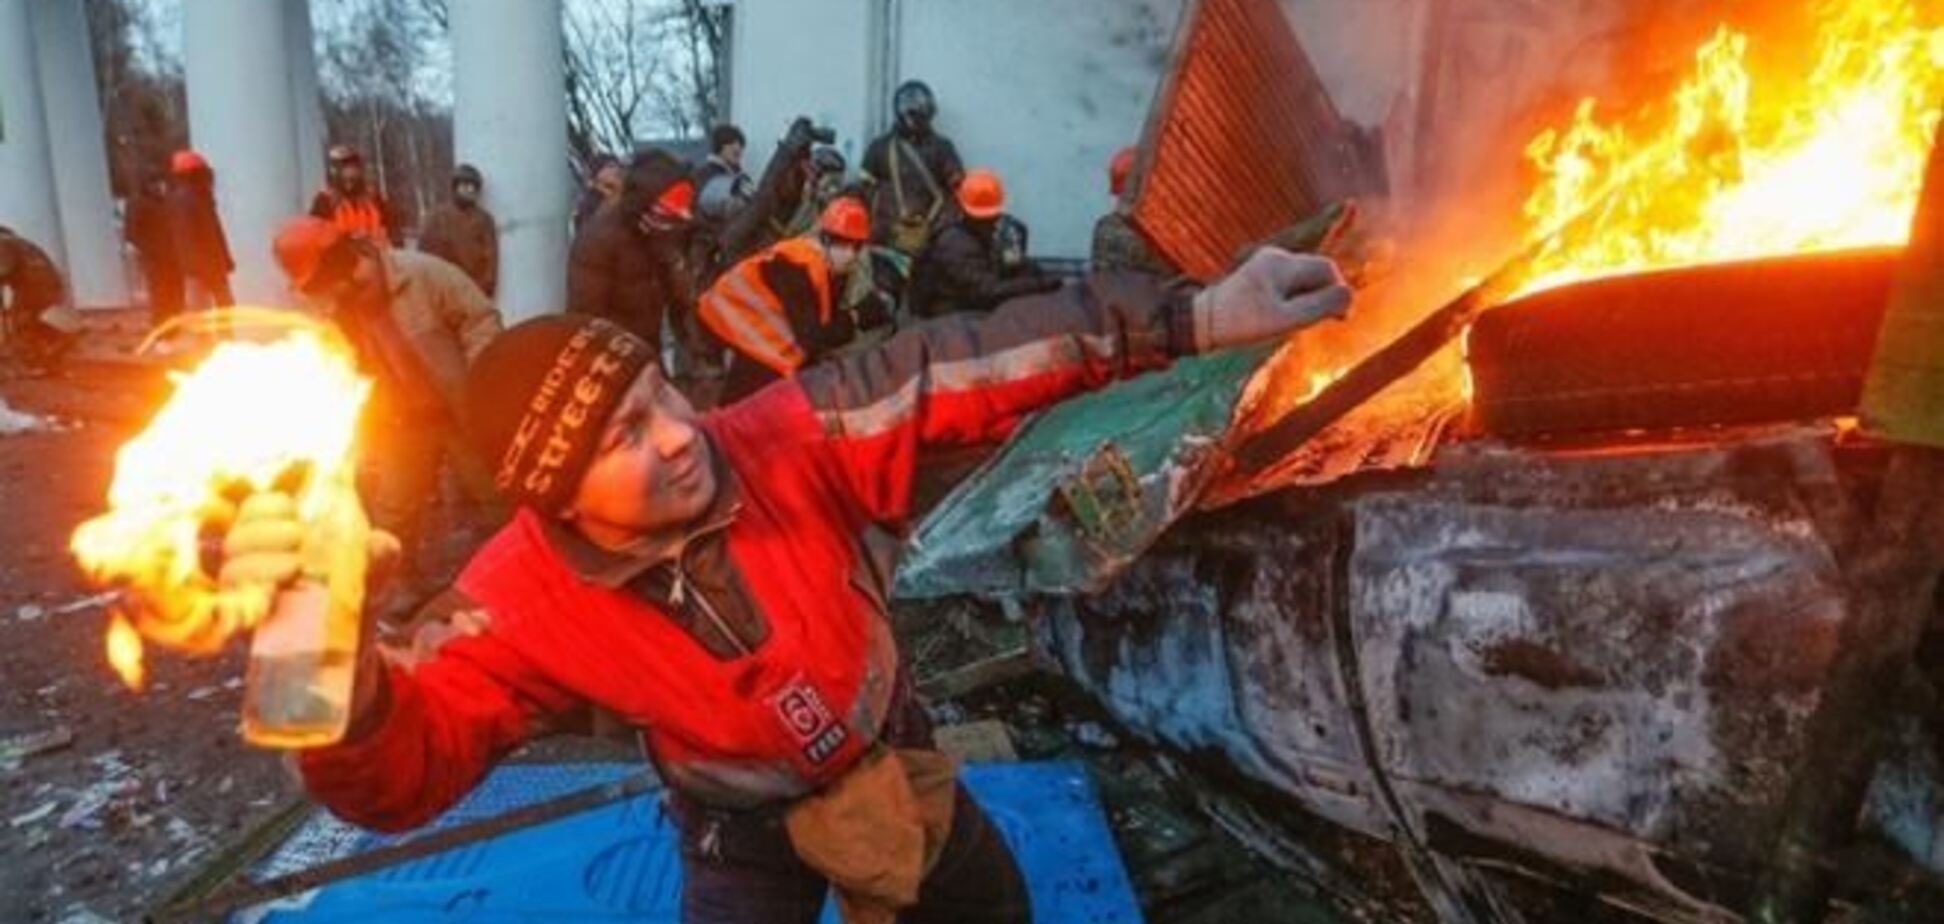 Олланд: найближчими днями насильство в Україні може відновитися